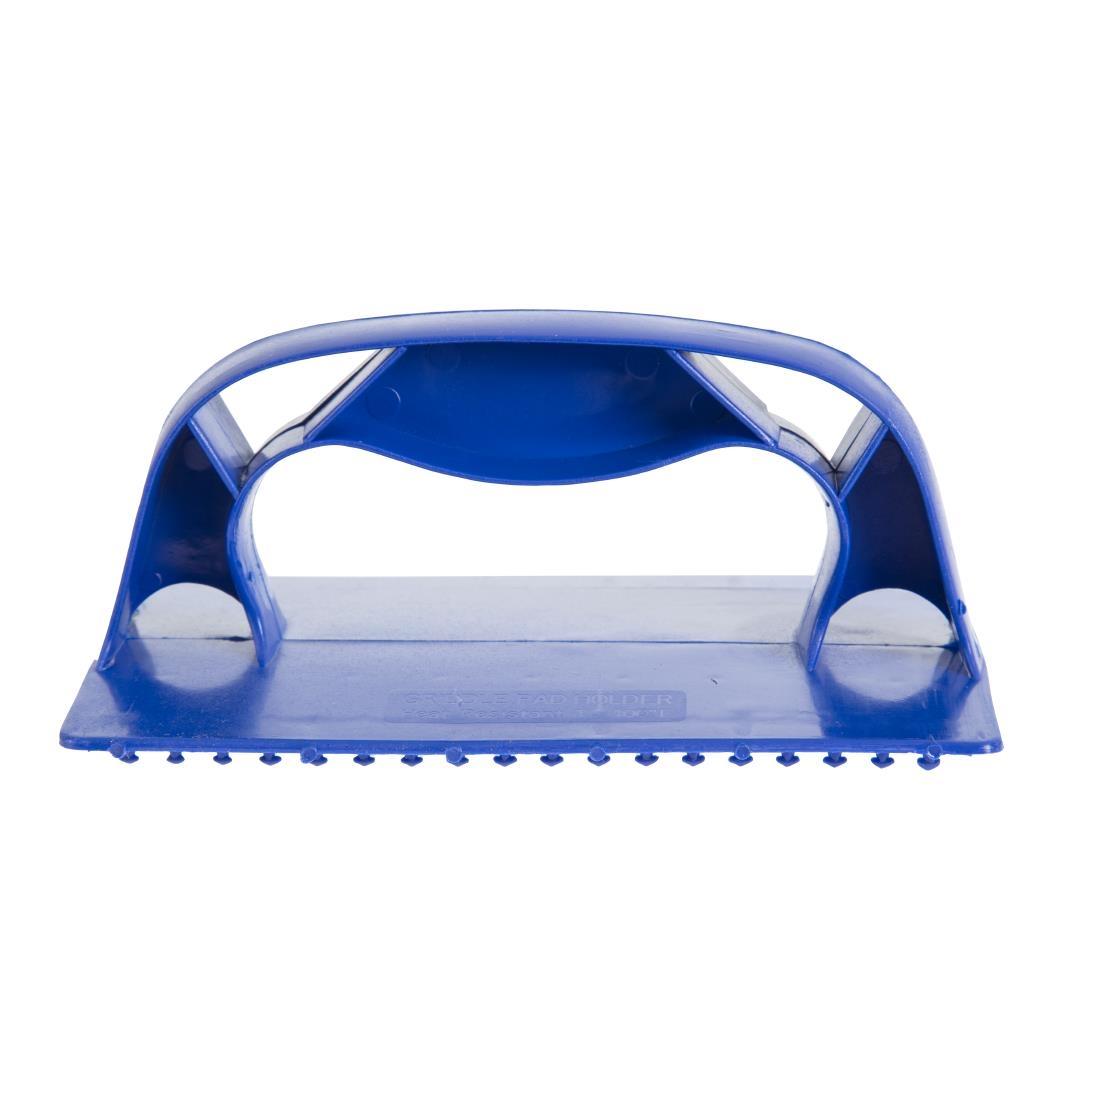 Griddle Cleaner Pad Holder - F961  - 1